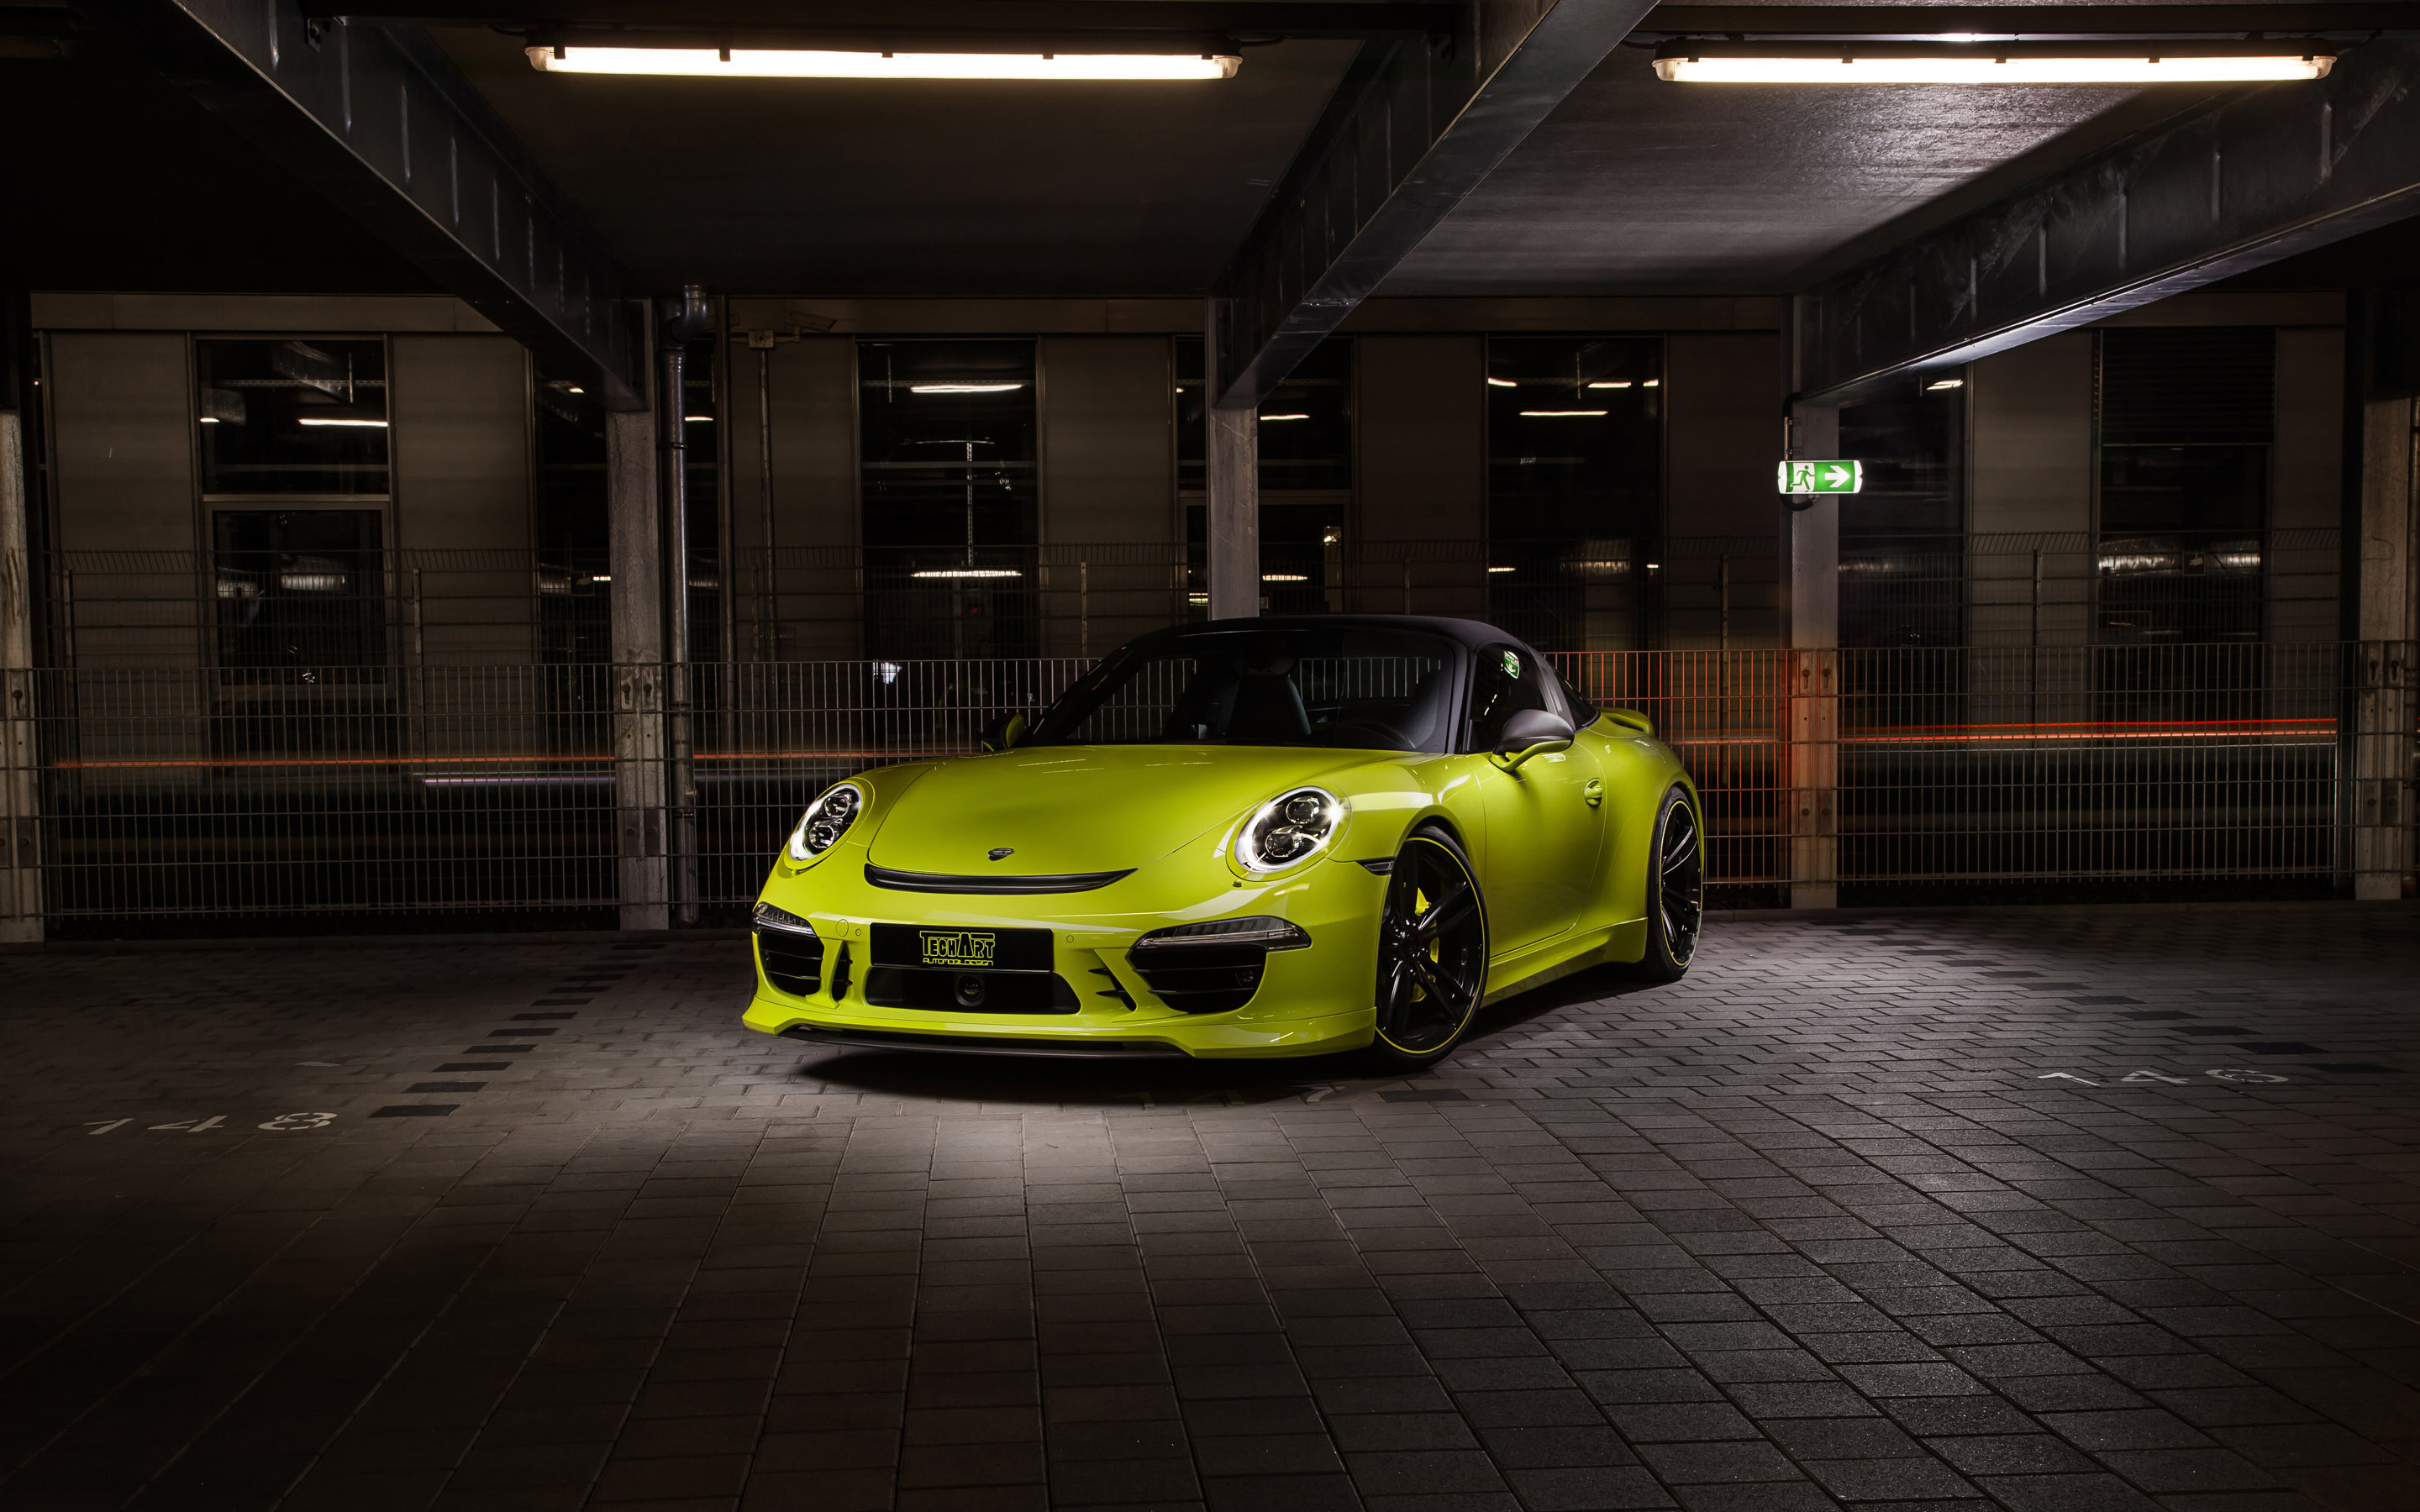 Télécharger des fonds d'écran Porsche 911 Targa 4S HD